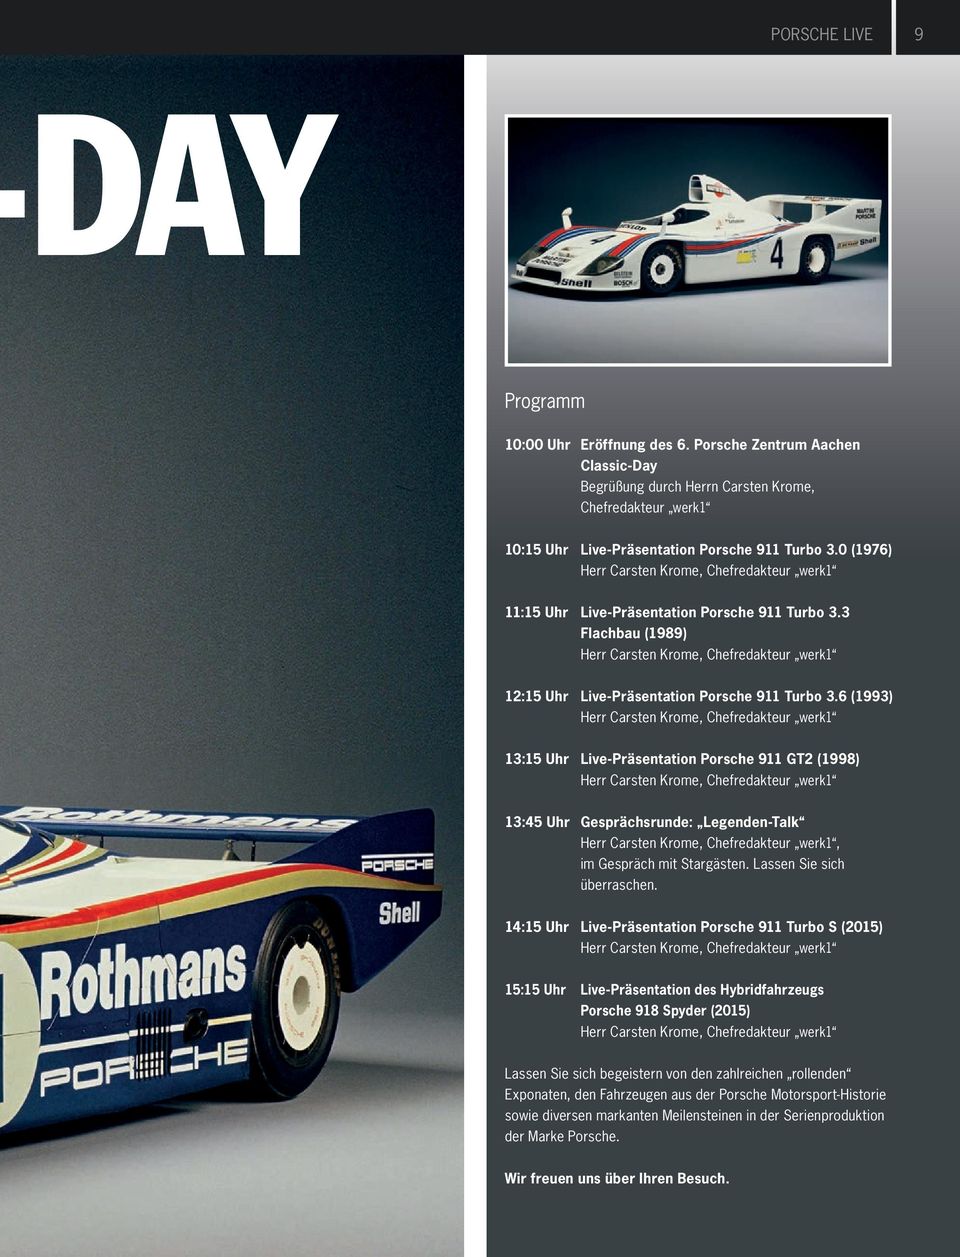 3 Flachbau (1989) Herr Carsten Krome, Chefredakteur werk1 12:15 Uhr Live-Präsentation Porsche 911 Turbo 3.